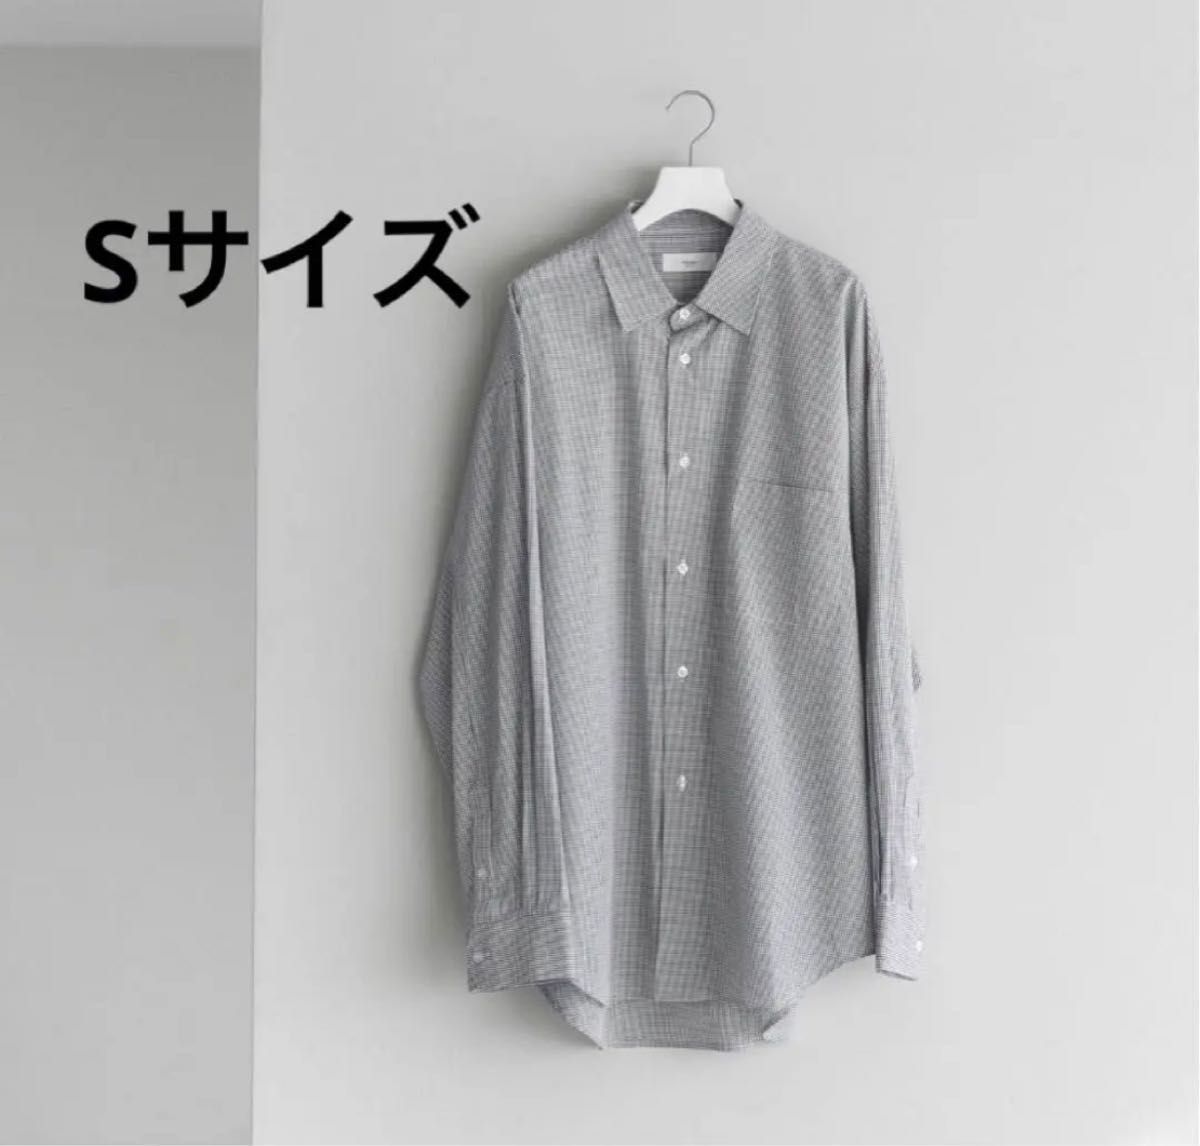 【匿名配送】remer ルーズベーシックオーバーシャツ Sサイズ チェック柄  長袖シャツ